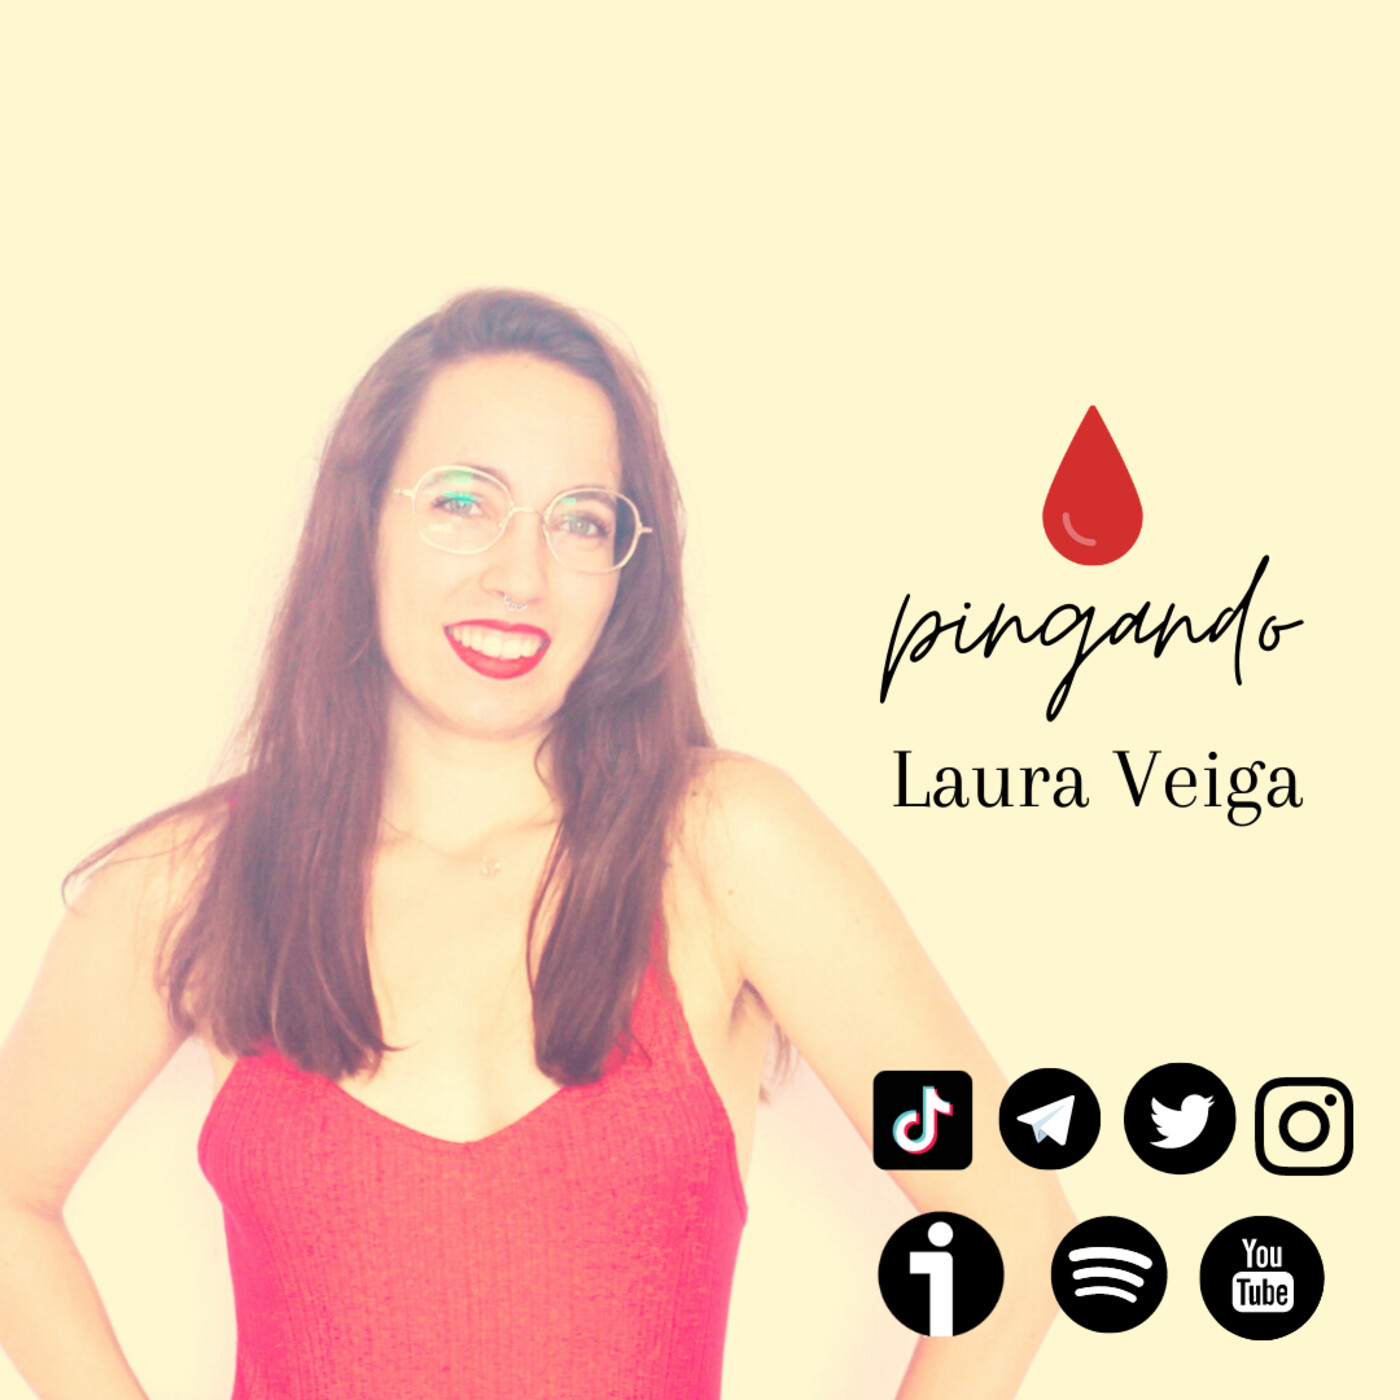 Pingando - Laura Veiga